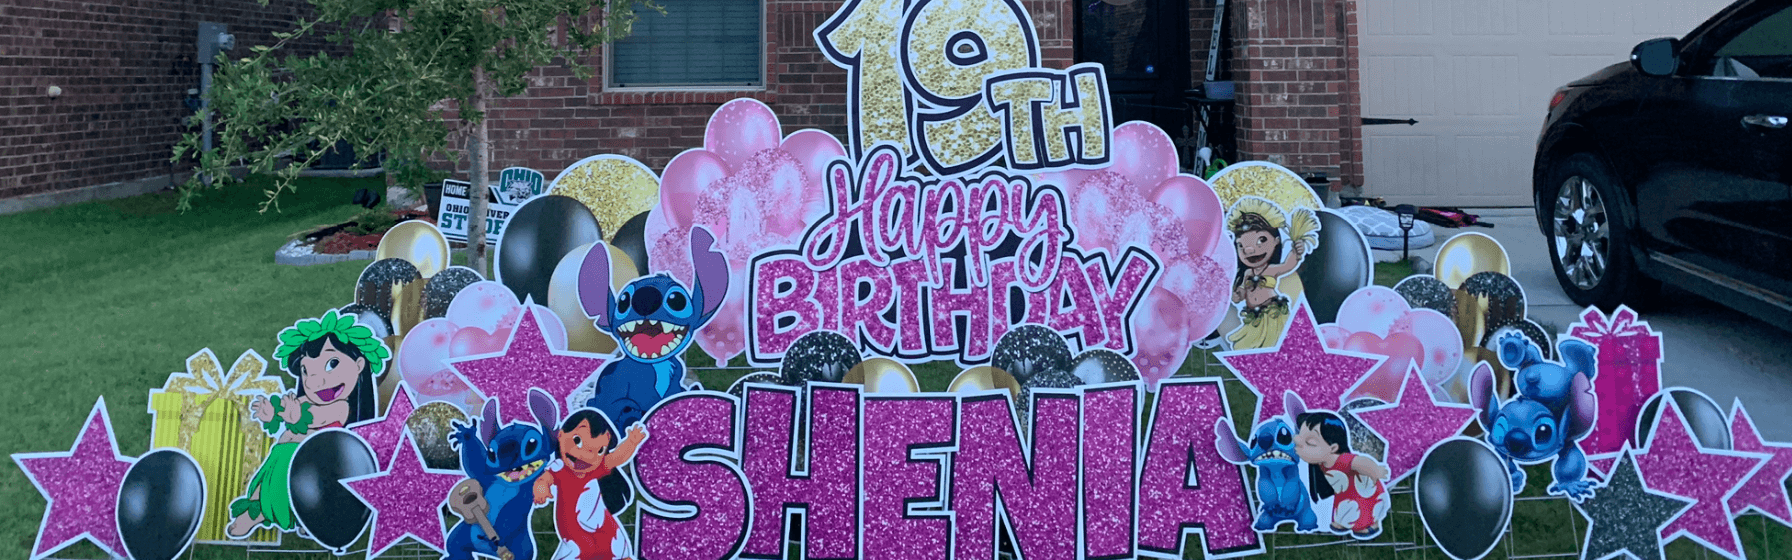 Yard card sign happy birthday shenia 